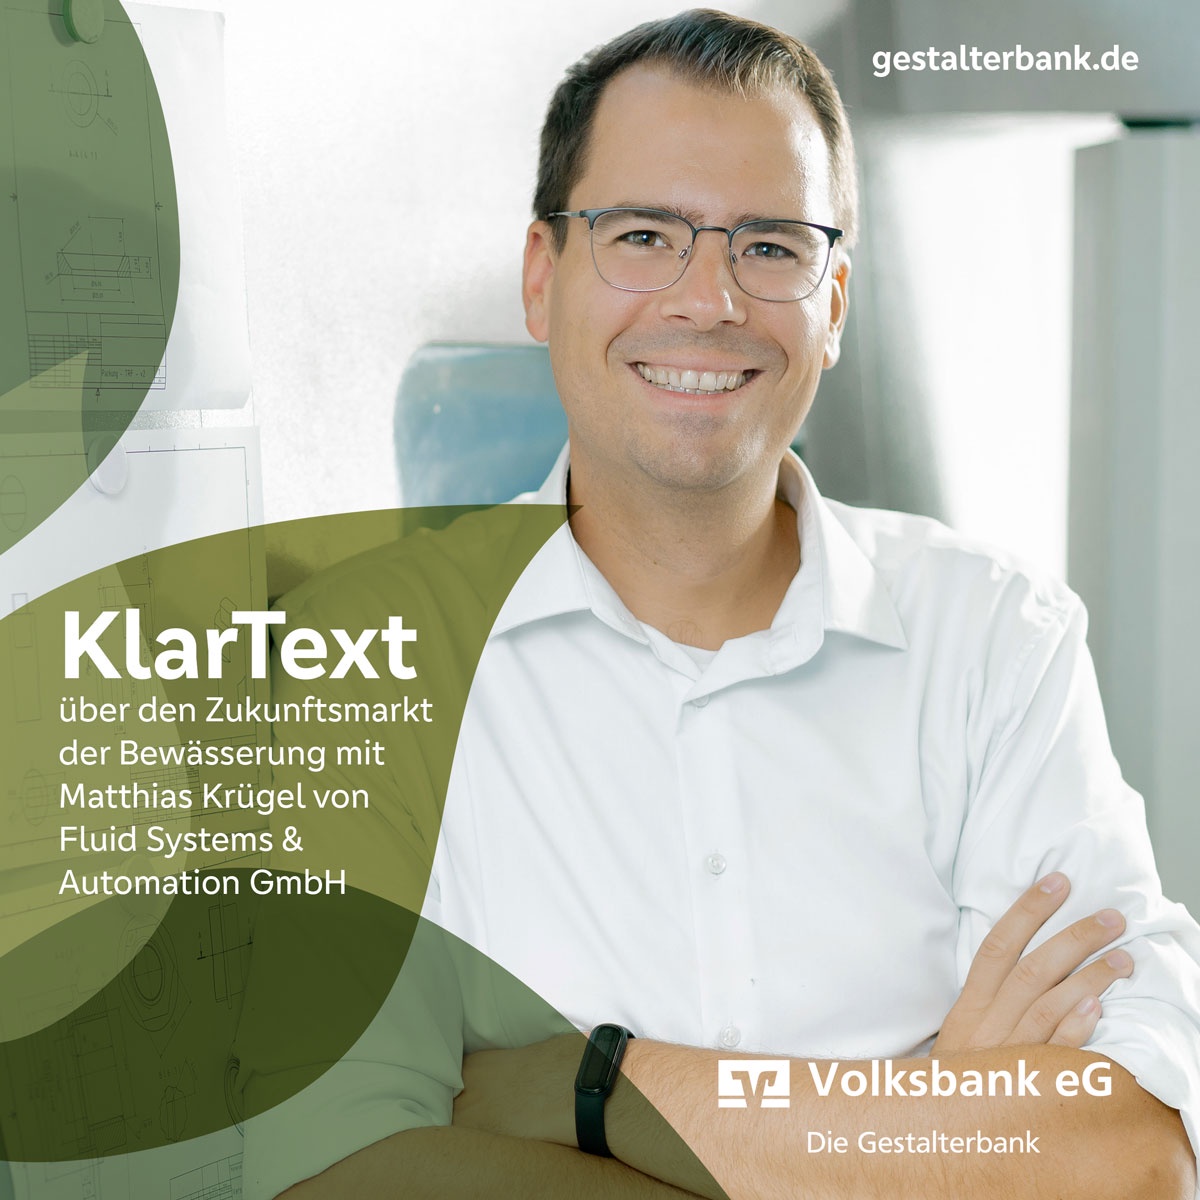 Episode 19: KlarText über den Zukunftsmarkt der Bewässerung mit Matthias Krügel von Fluid Systems & Automation GmbH